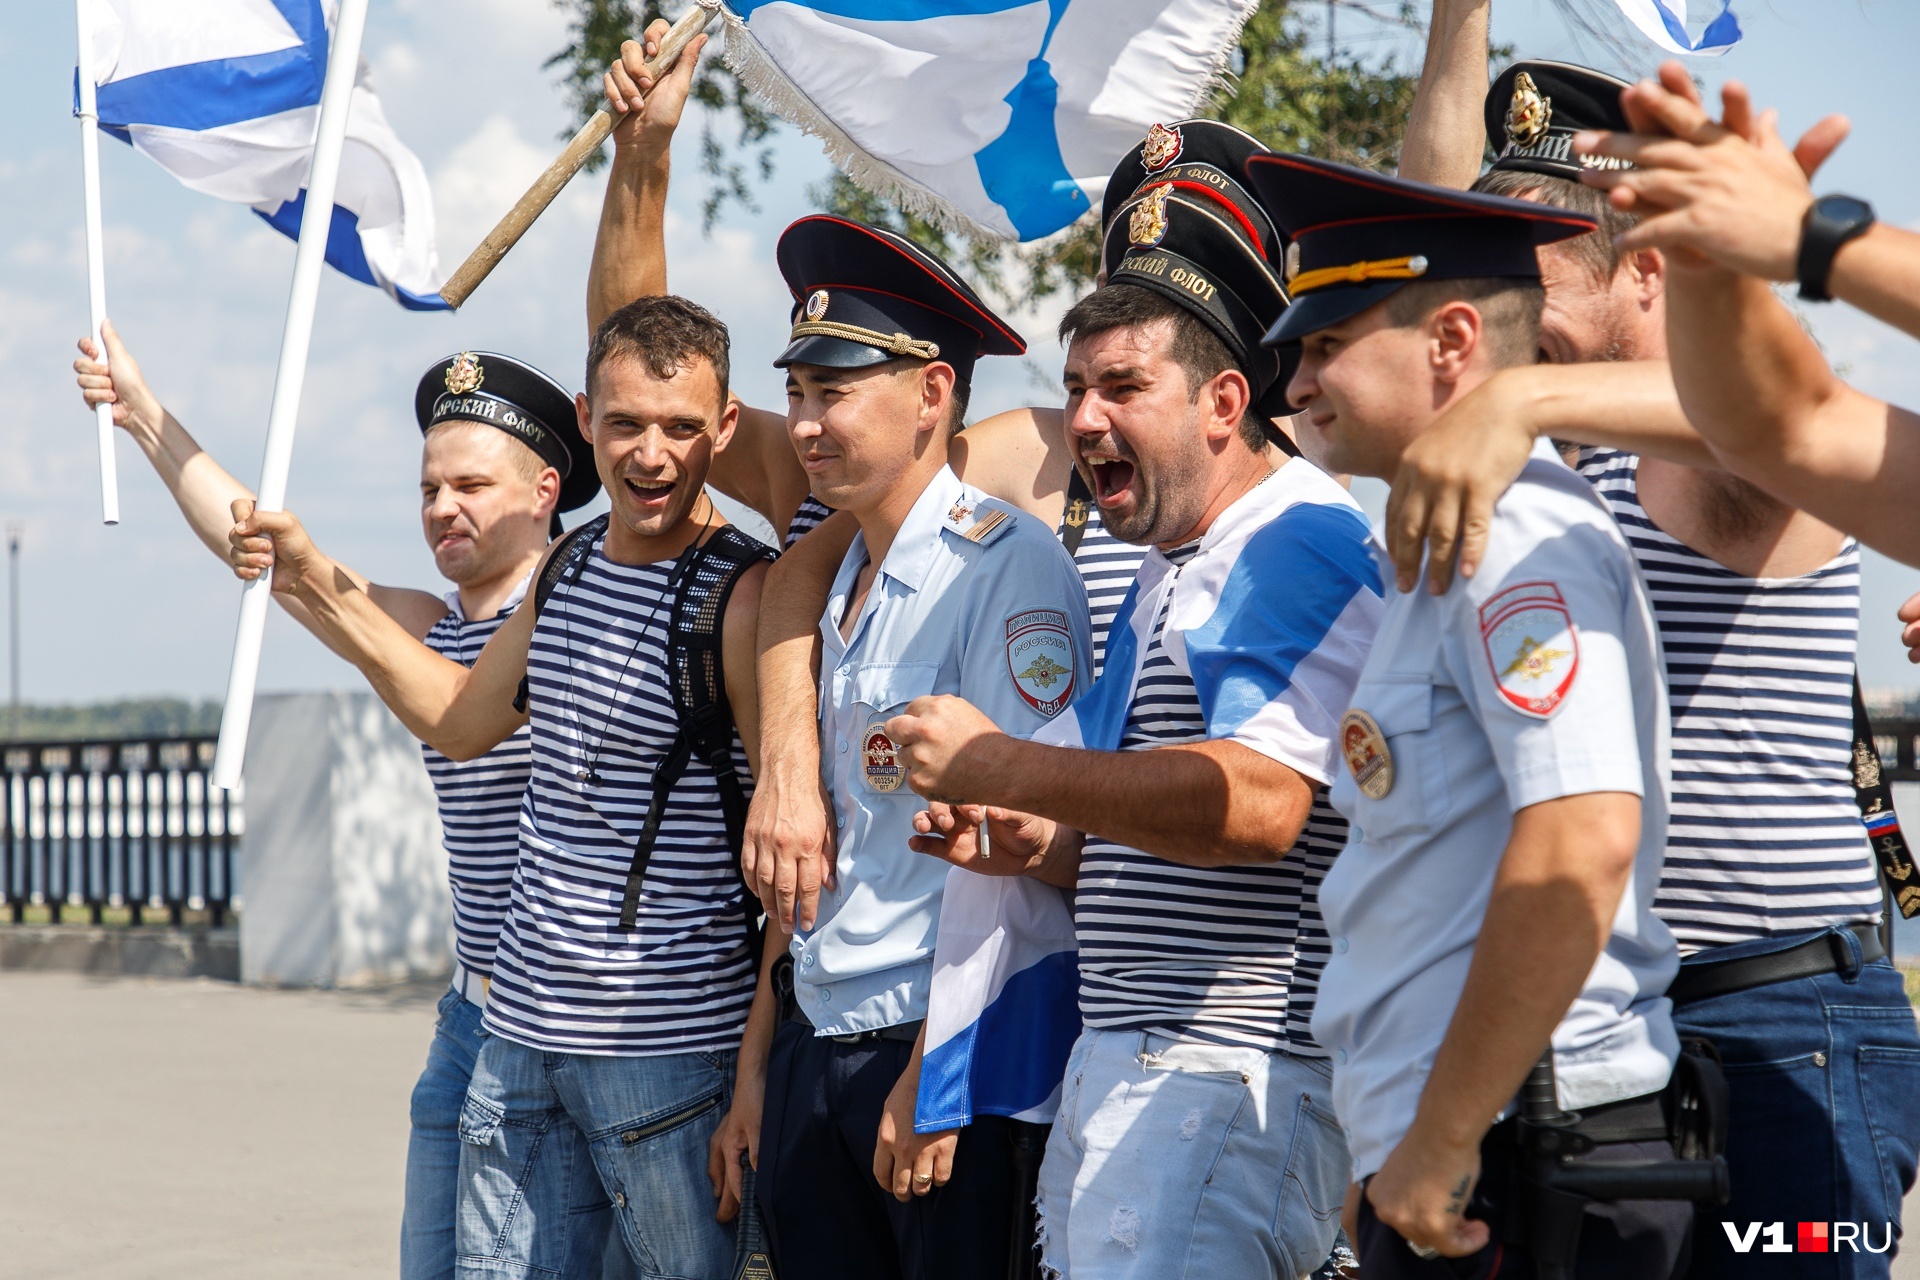 «В фонтанах не купались»: моряки оккупировали центр Волгограда и побратались с полицией